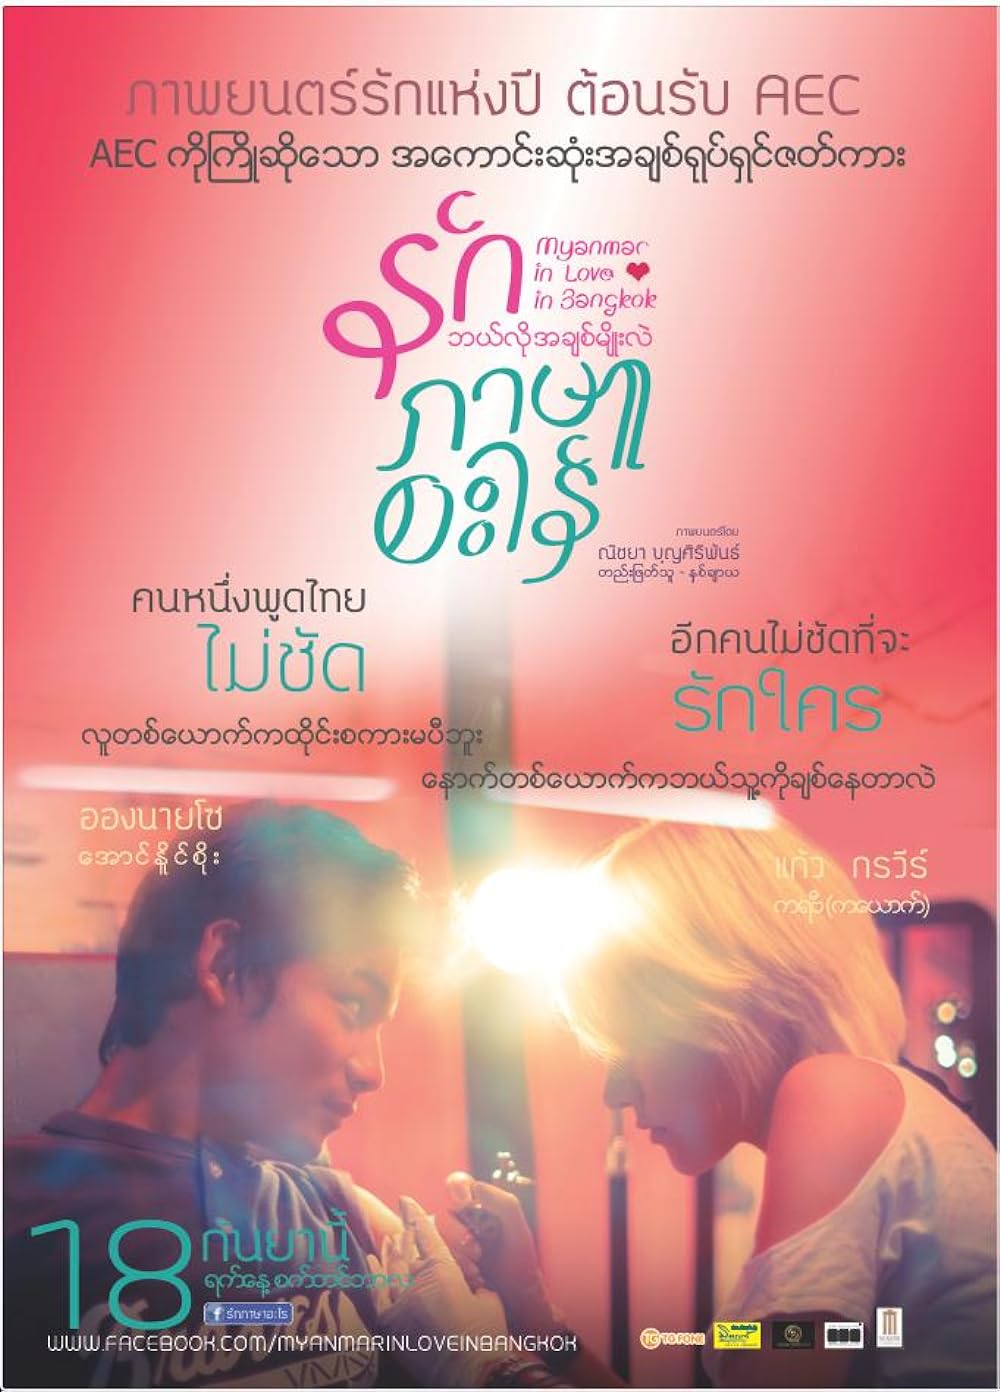 Movie poster: Myanmar in love in Bangkok (2014)